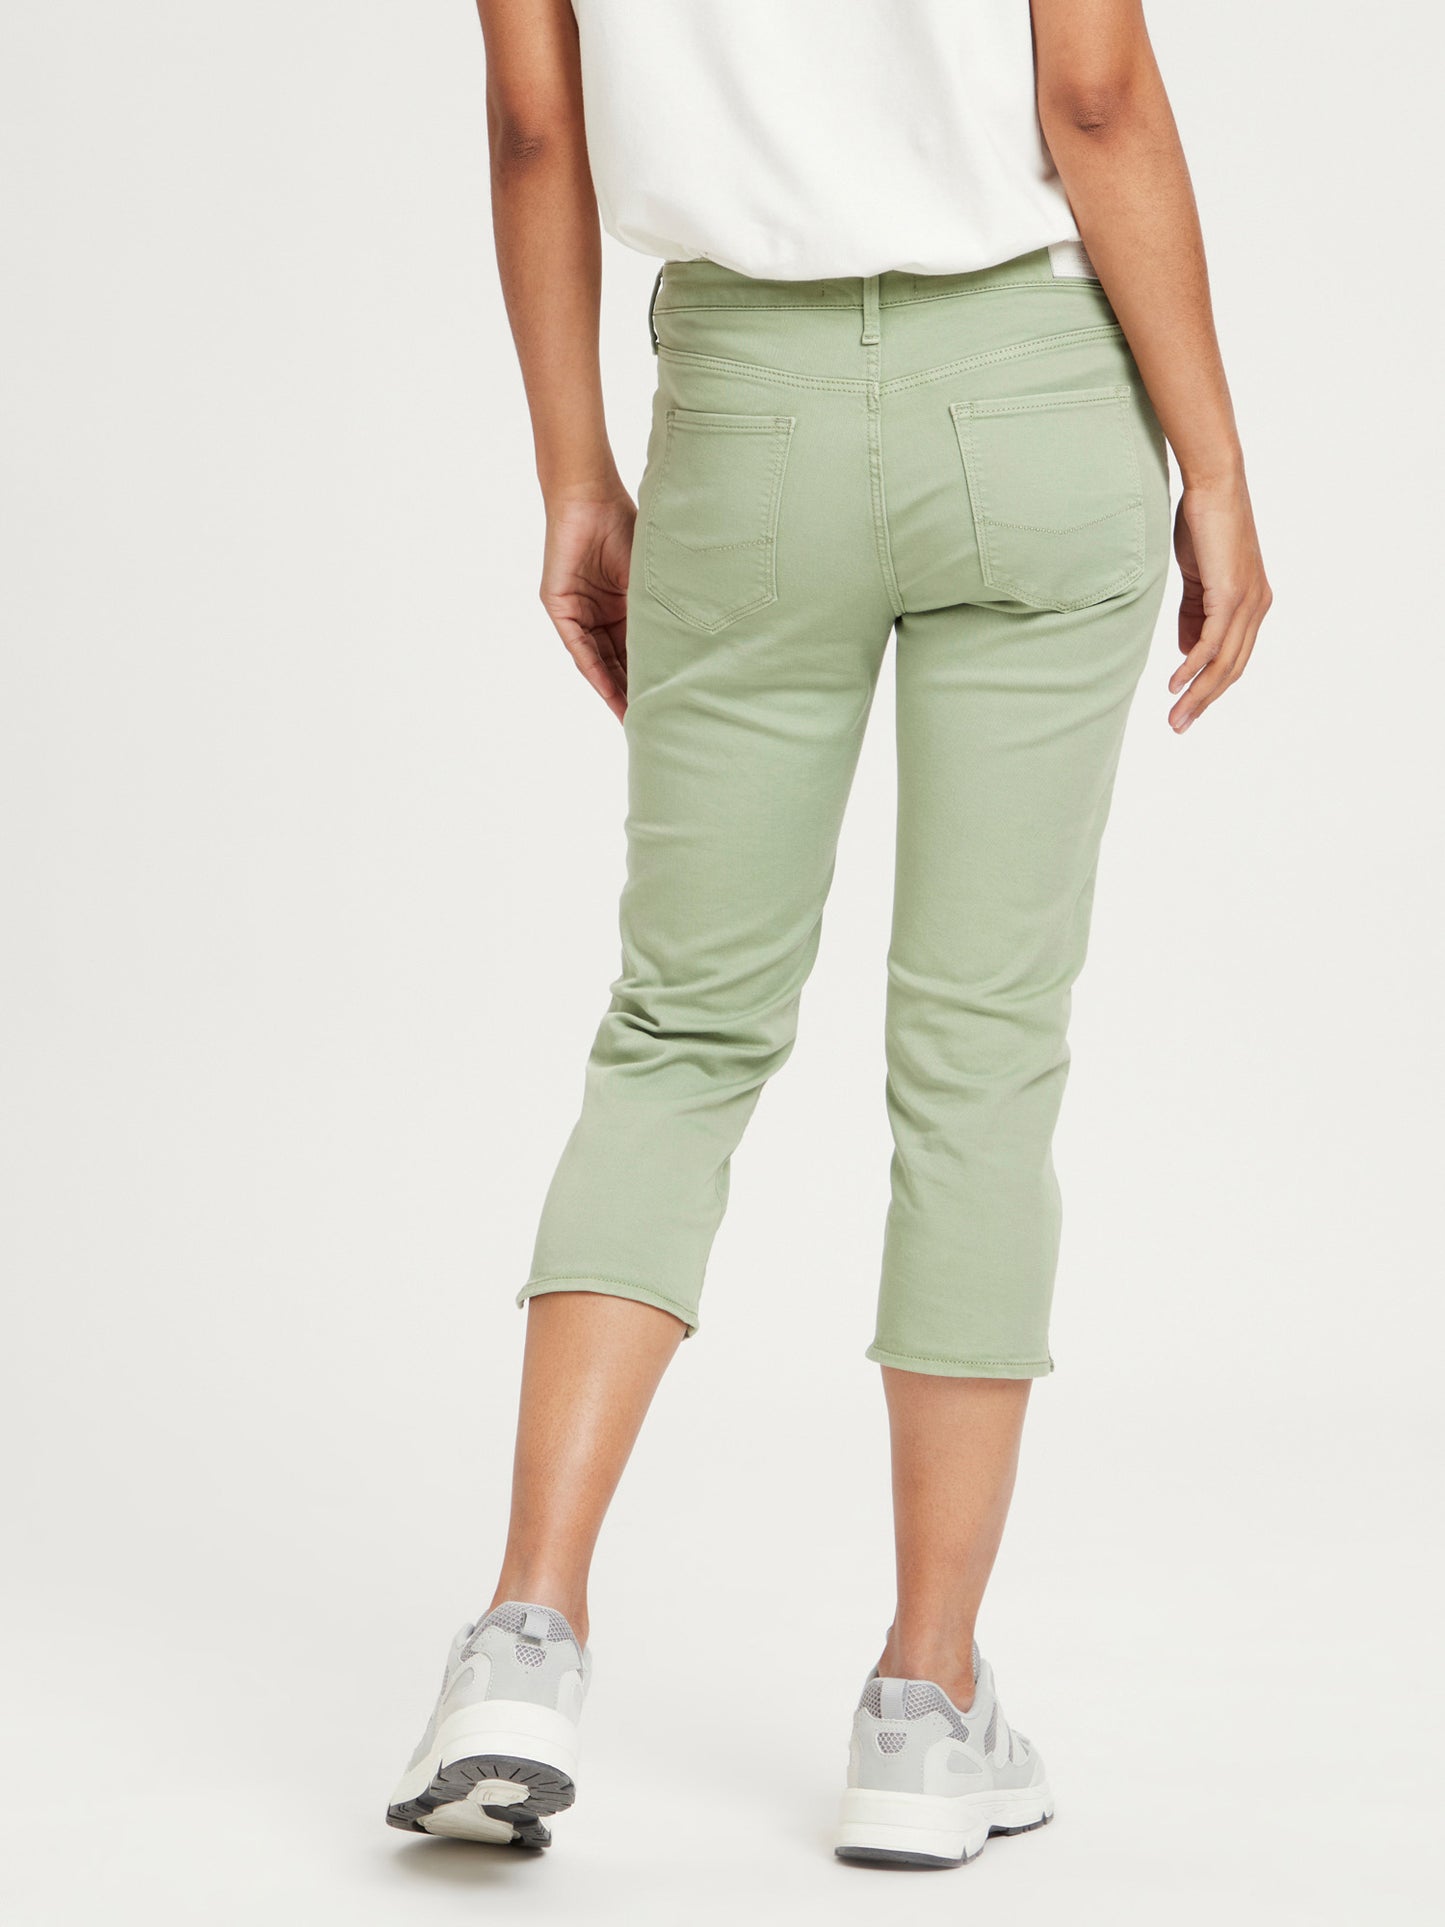 Amber women's capri jeans slim fit mint